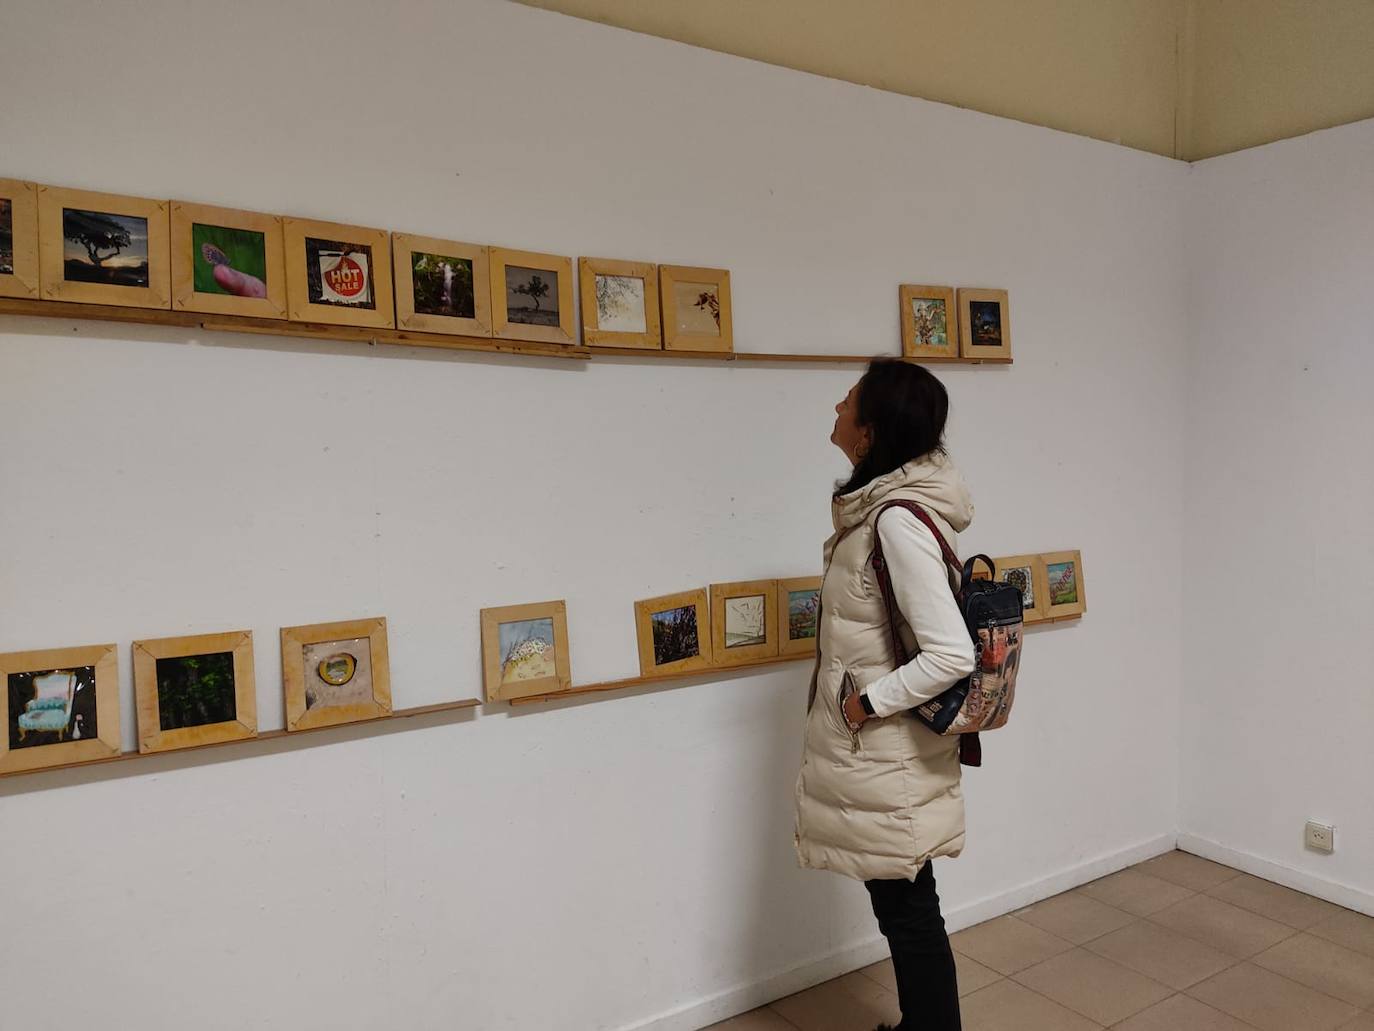 Hasta el 23 de octubre la exposición en la que han participado 80 artistas se podrá visitar en la Galería didáctica del Colegio Maristas San José | Todas las obras, desde fotografías hasta collages, son del mismo formato.